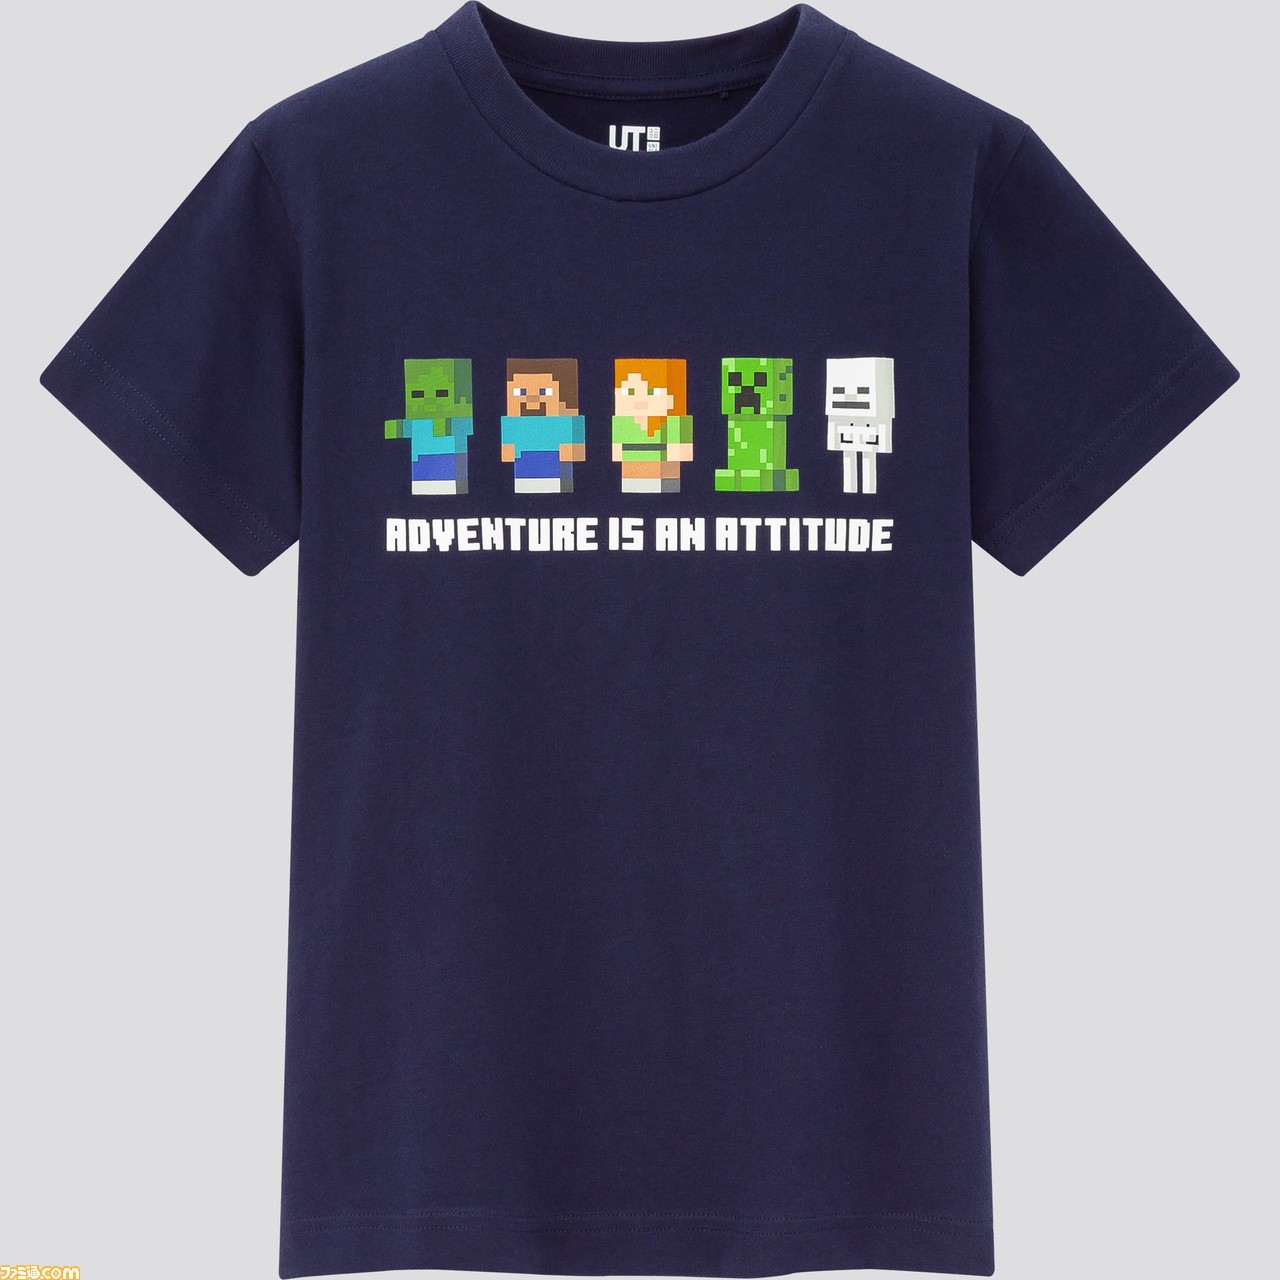 マイクラ ユニクロのコラボtシャツが3 発売 Tシャツを着たキャラクタースキンパックも無料配布 ファミ通 Com